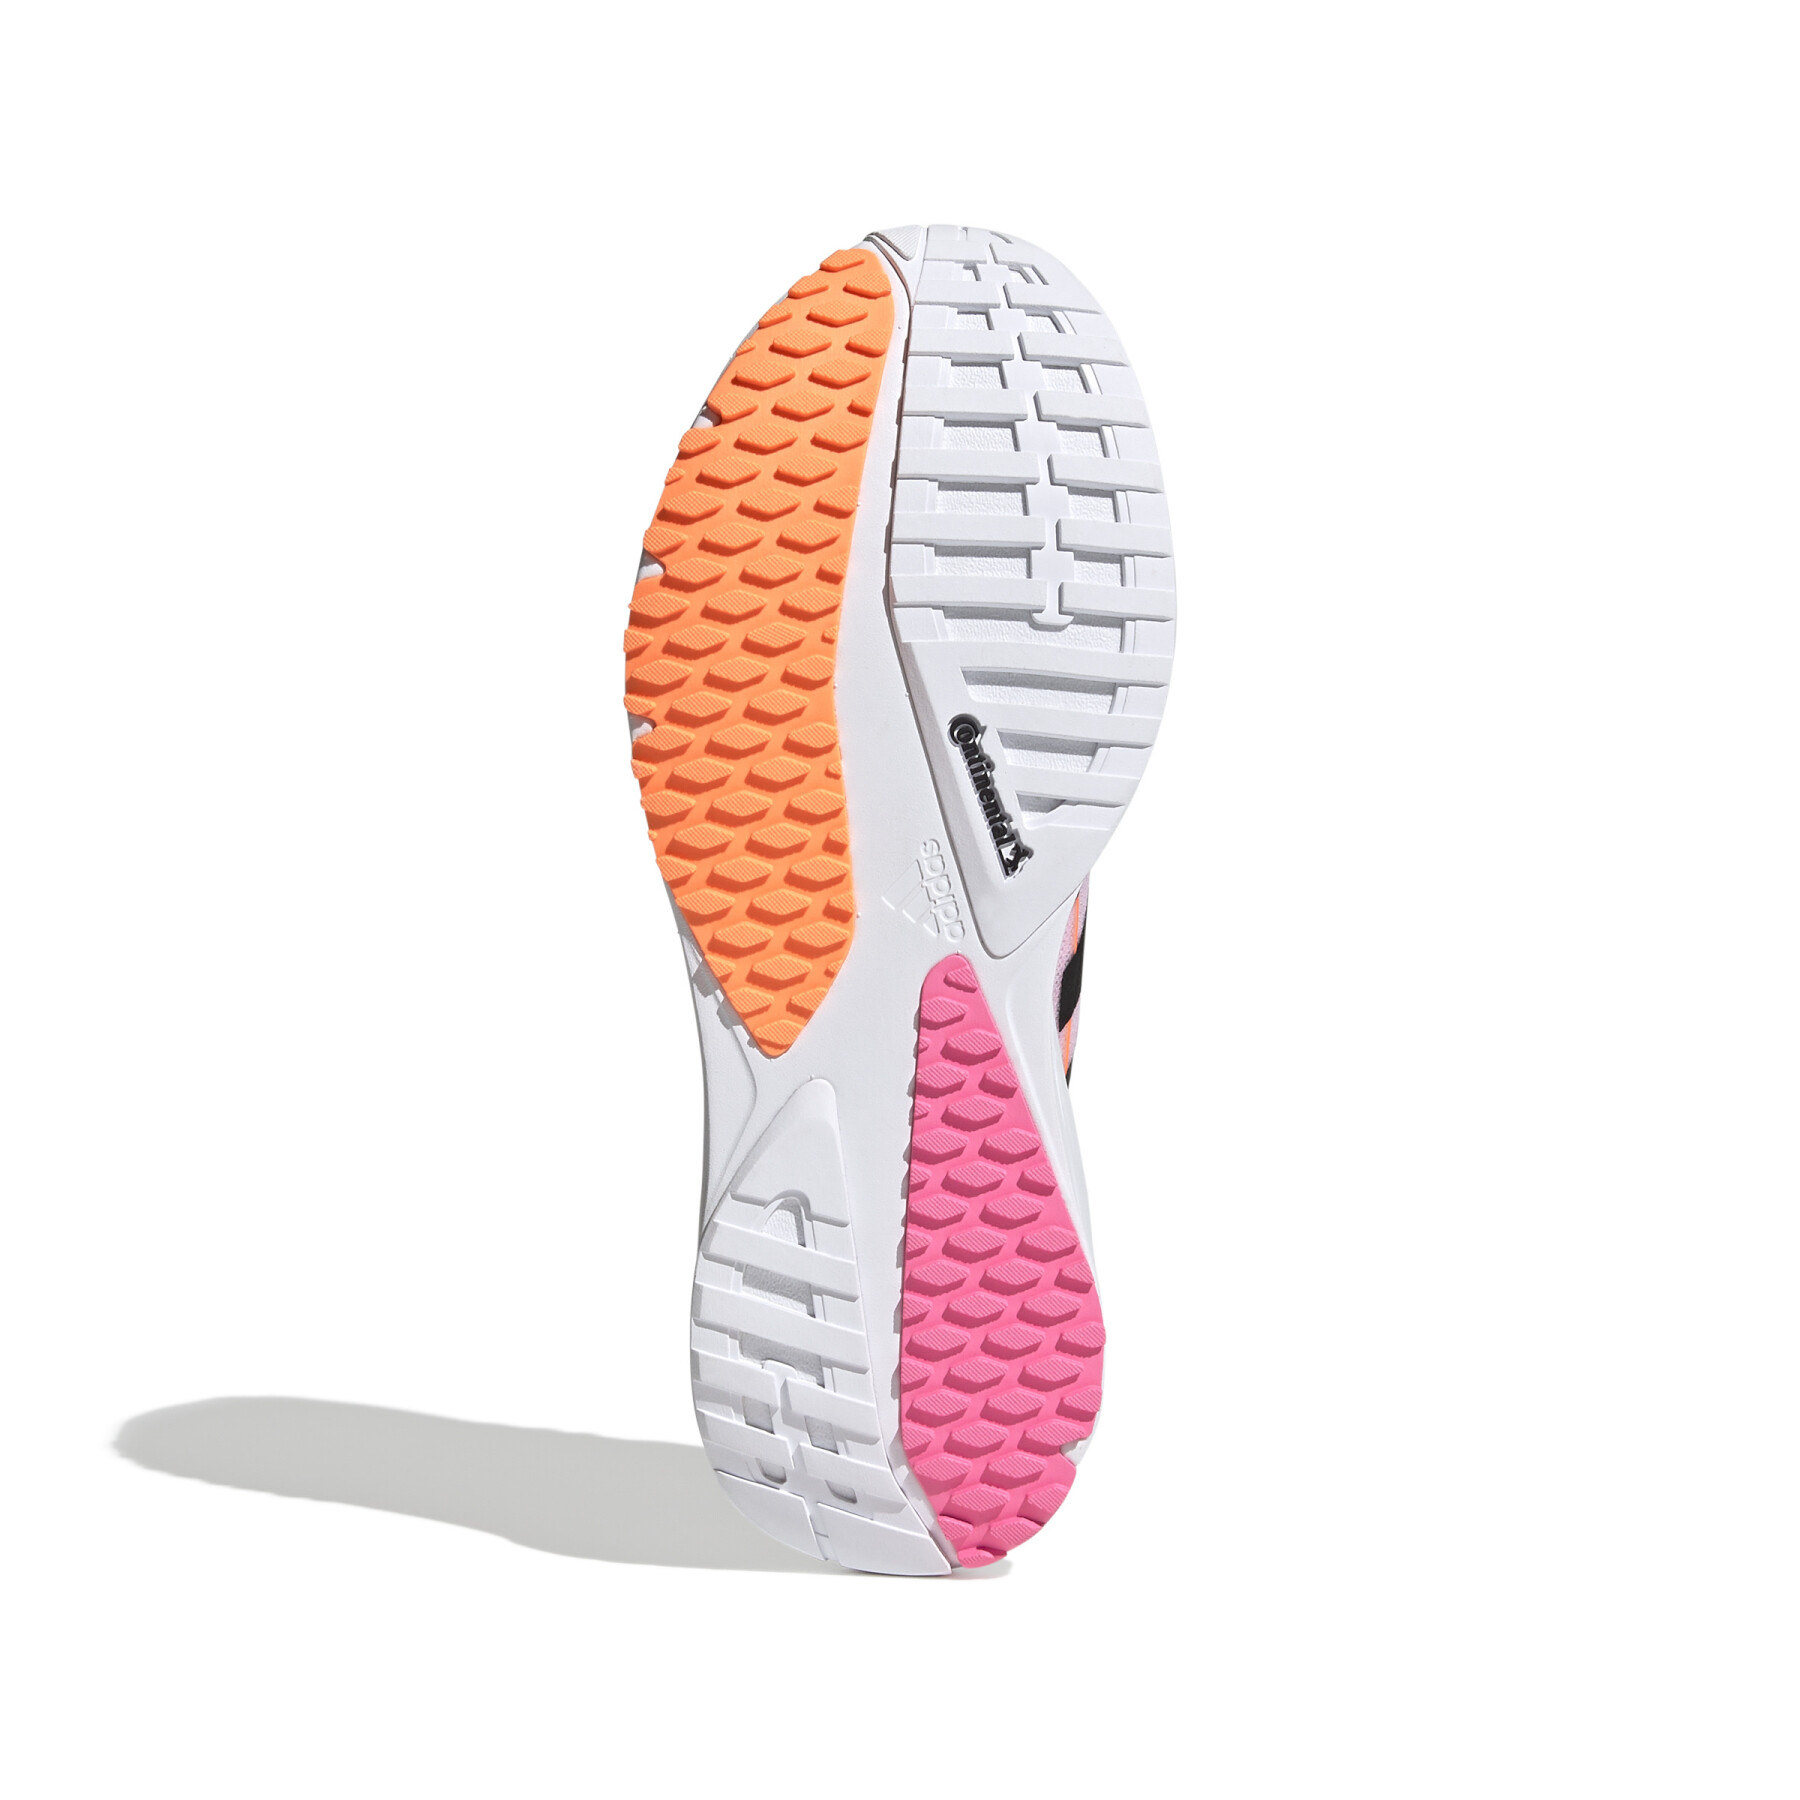 Chaussures de running femme adidas SL20.2 Summer.Ready